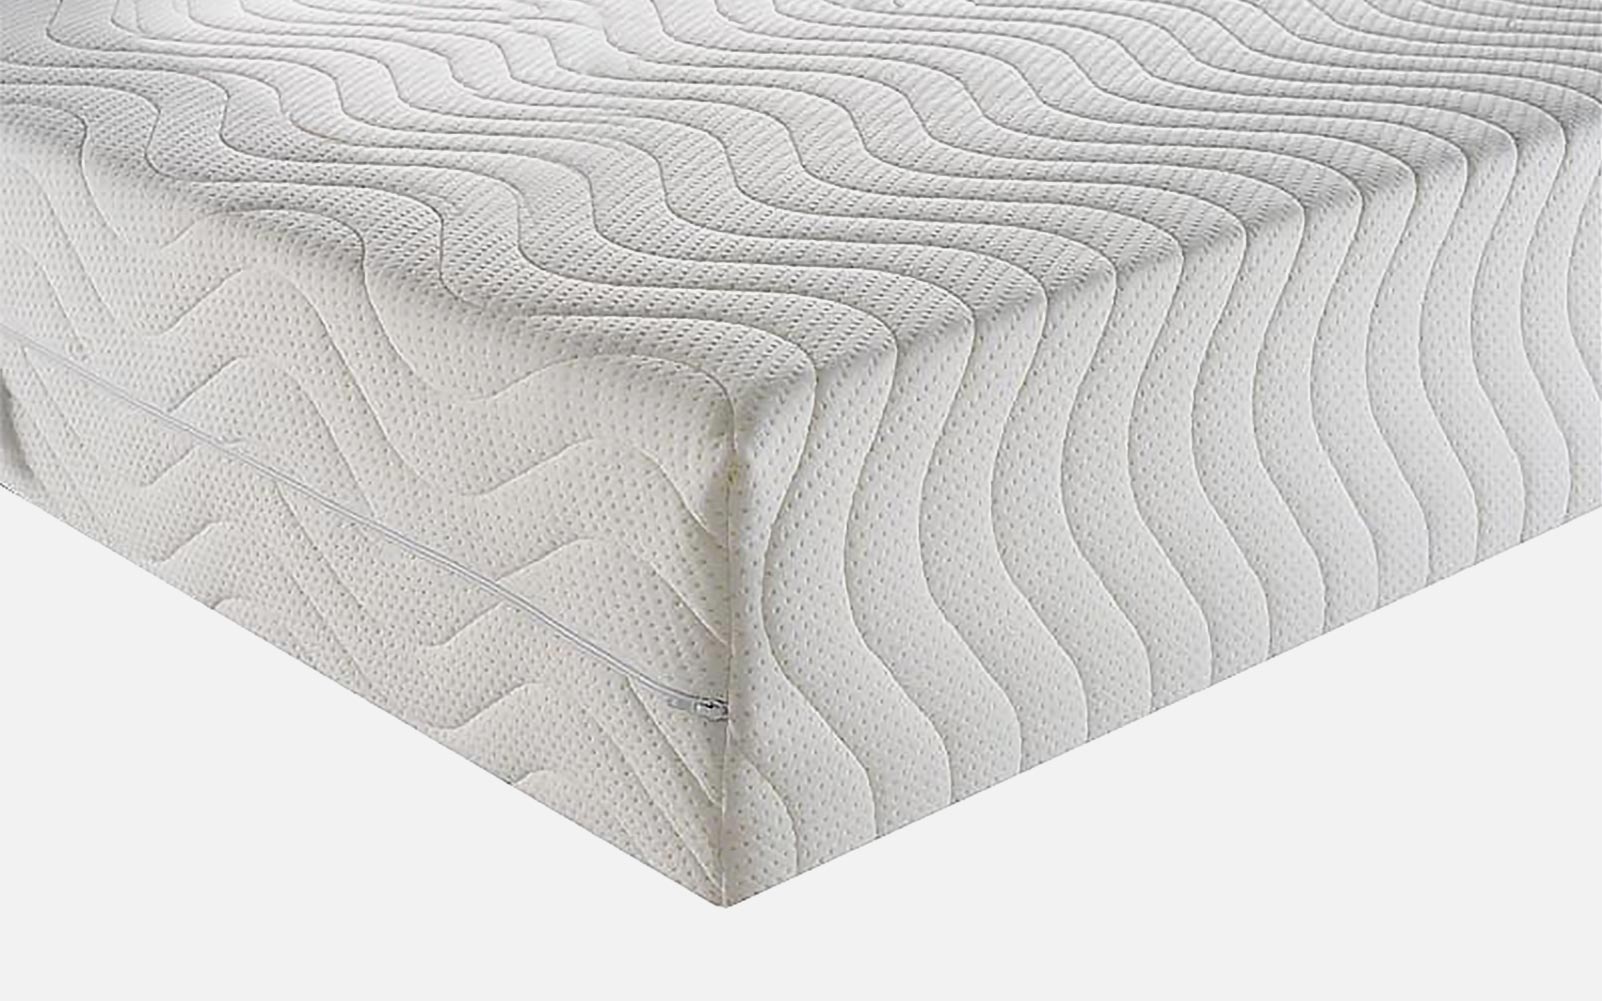 Odd size mattress